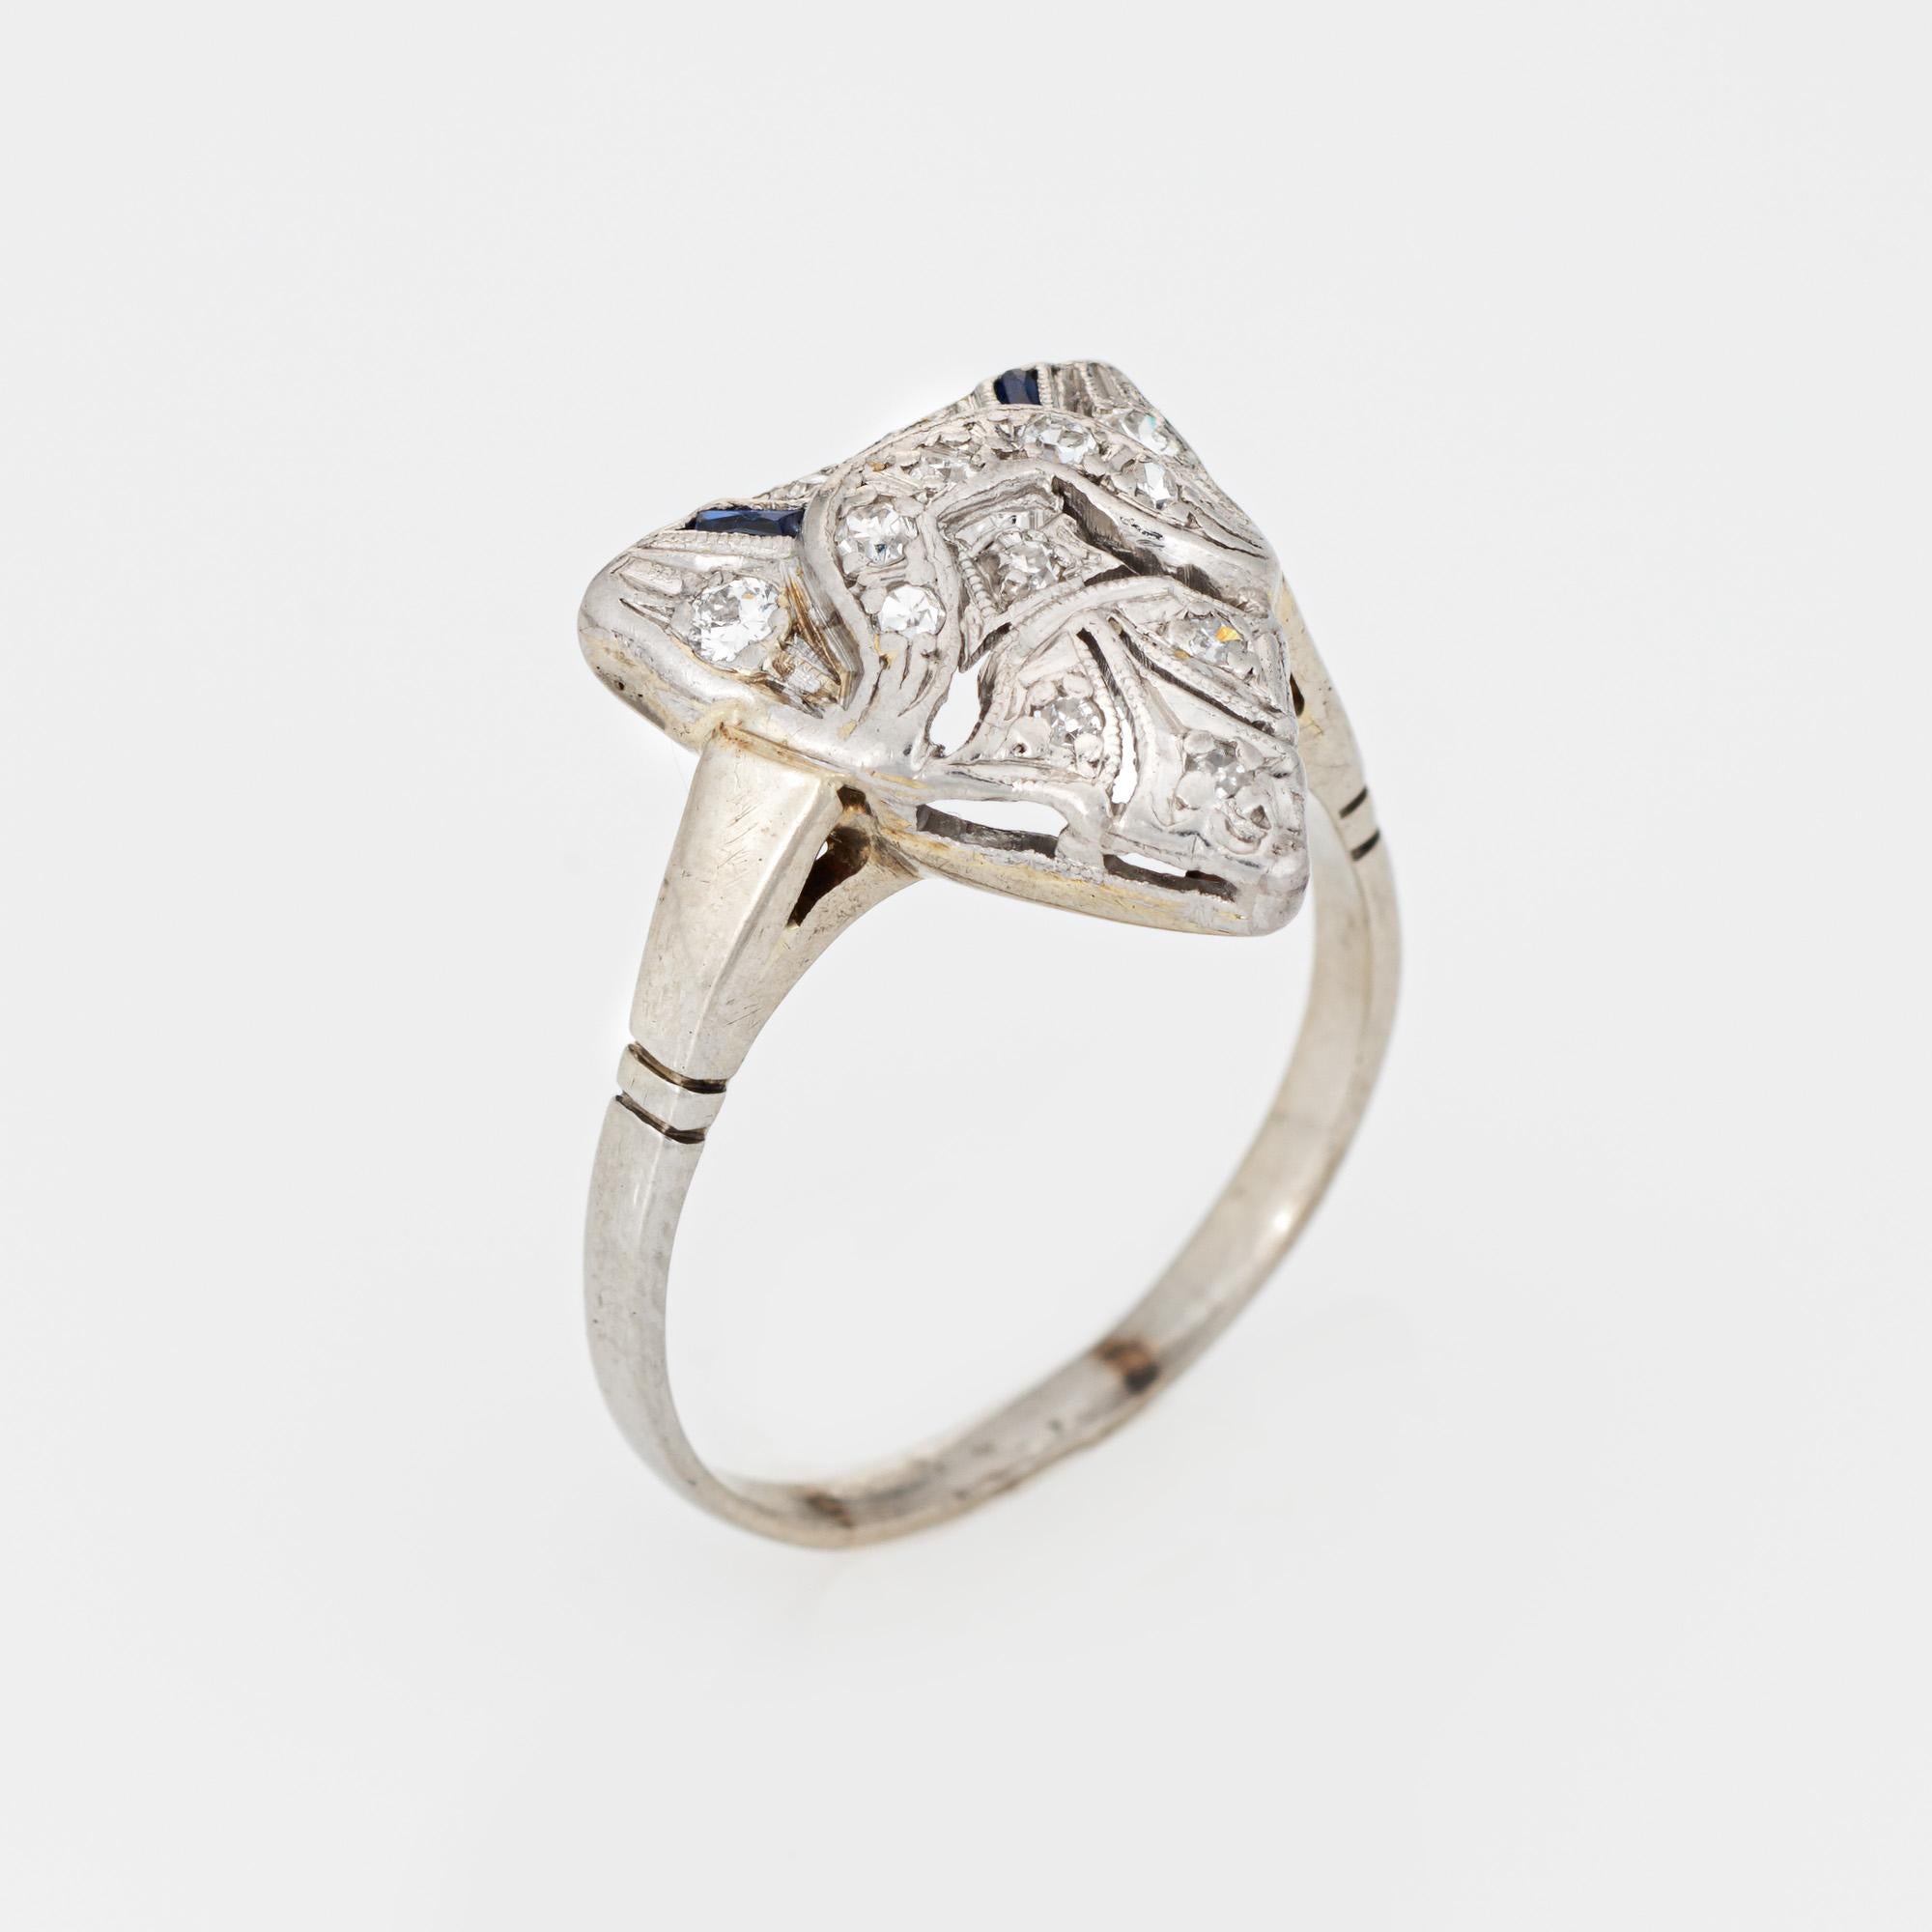 Bague vintage Art Deco finement détaillée en diamant et saphir synthétique (circa 1920 to 1930s), réalisée en or blanc 14k.  

13 diamants taille unique d'une valeur totale estimée à 0,06 carat (couleur I-J et pureté SI2-I2). Deux saphirs